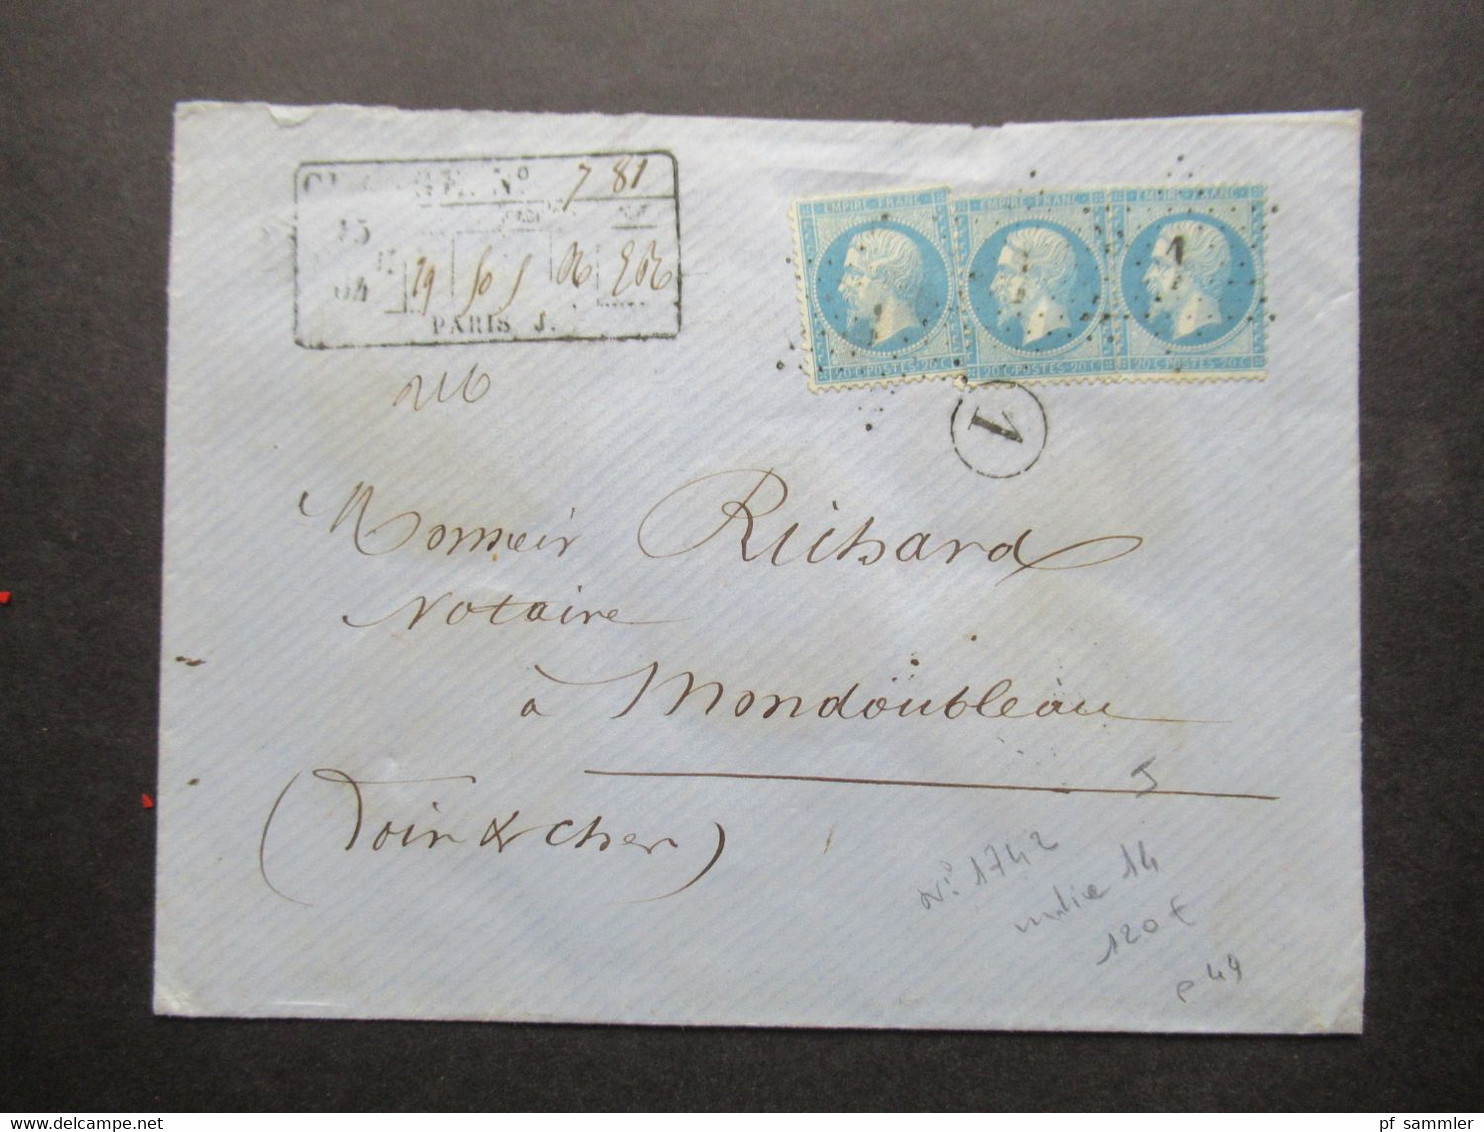 Frankreich 1864 Napoléon Michel Nr.21 (3) MeF Auf Charge Brief / Wertbrief Sternstempel Mit Nummer 1 Paris - 1862 Napoleon III